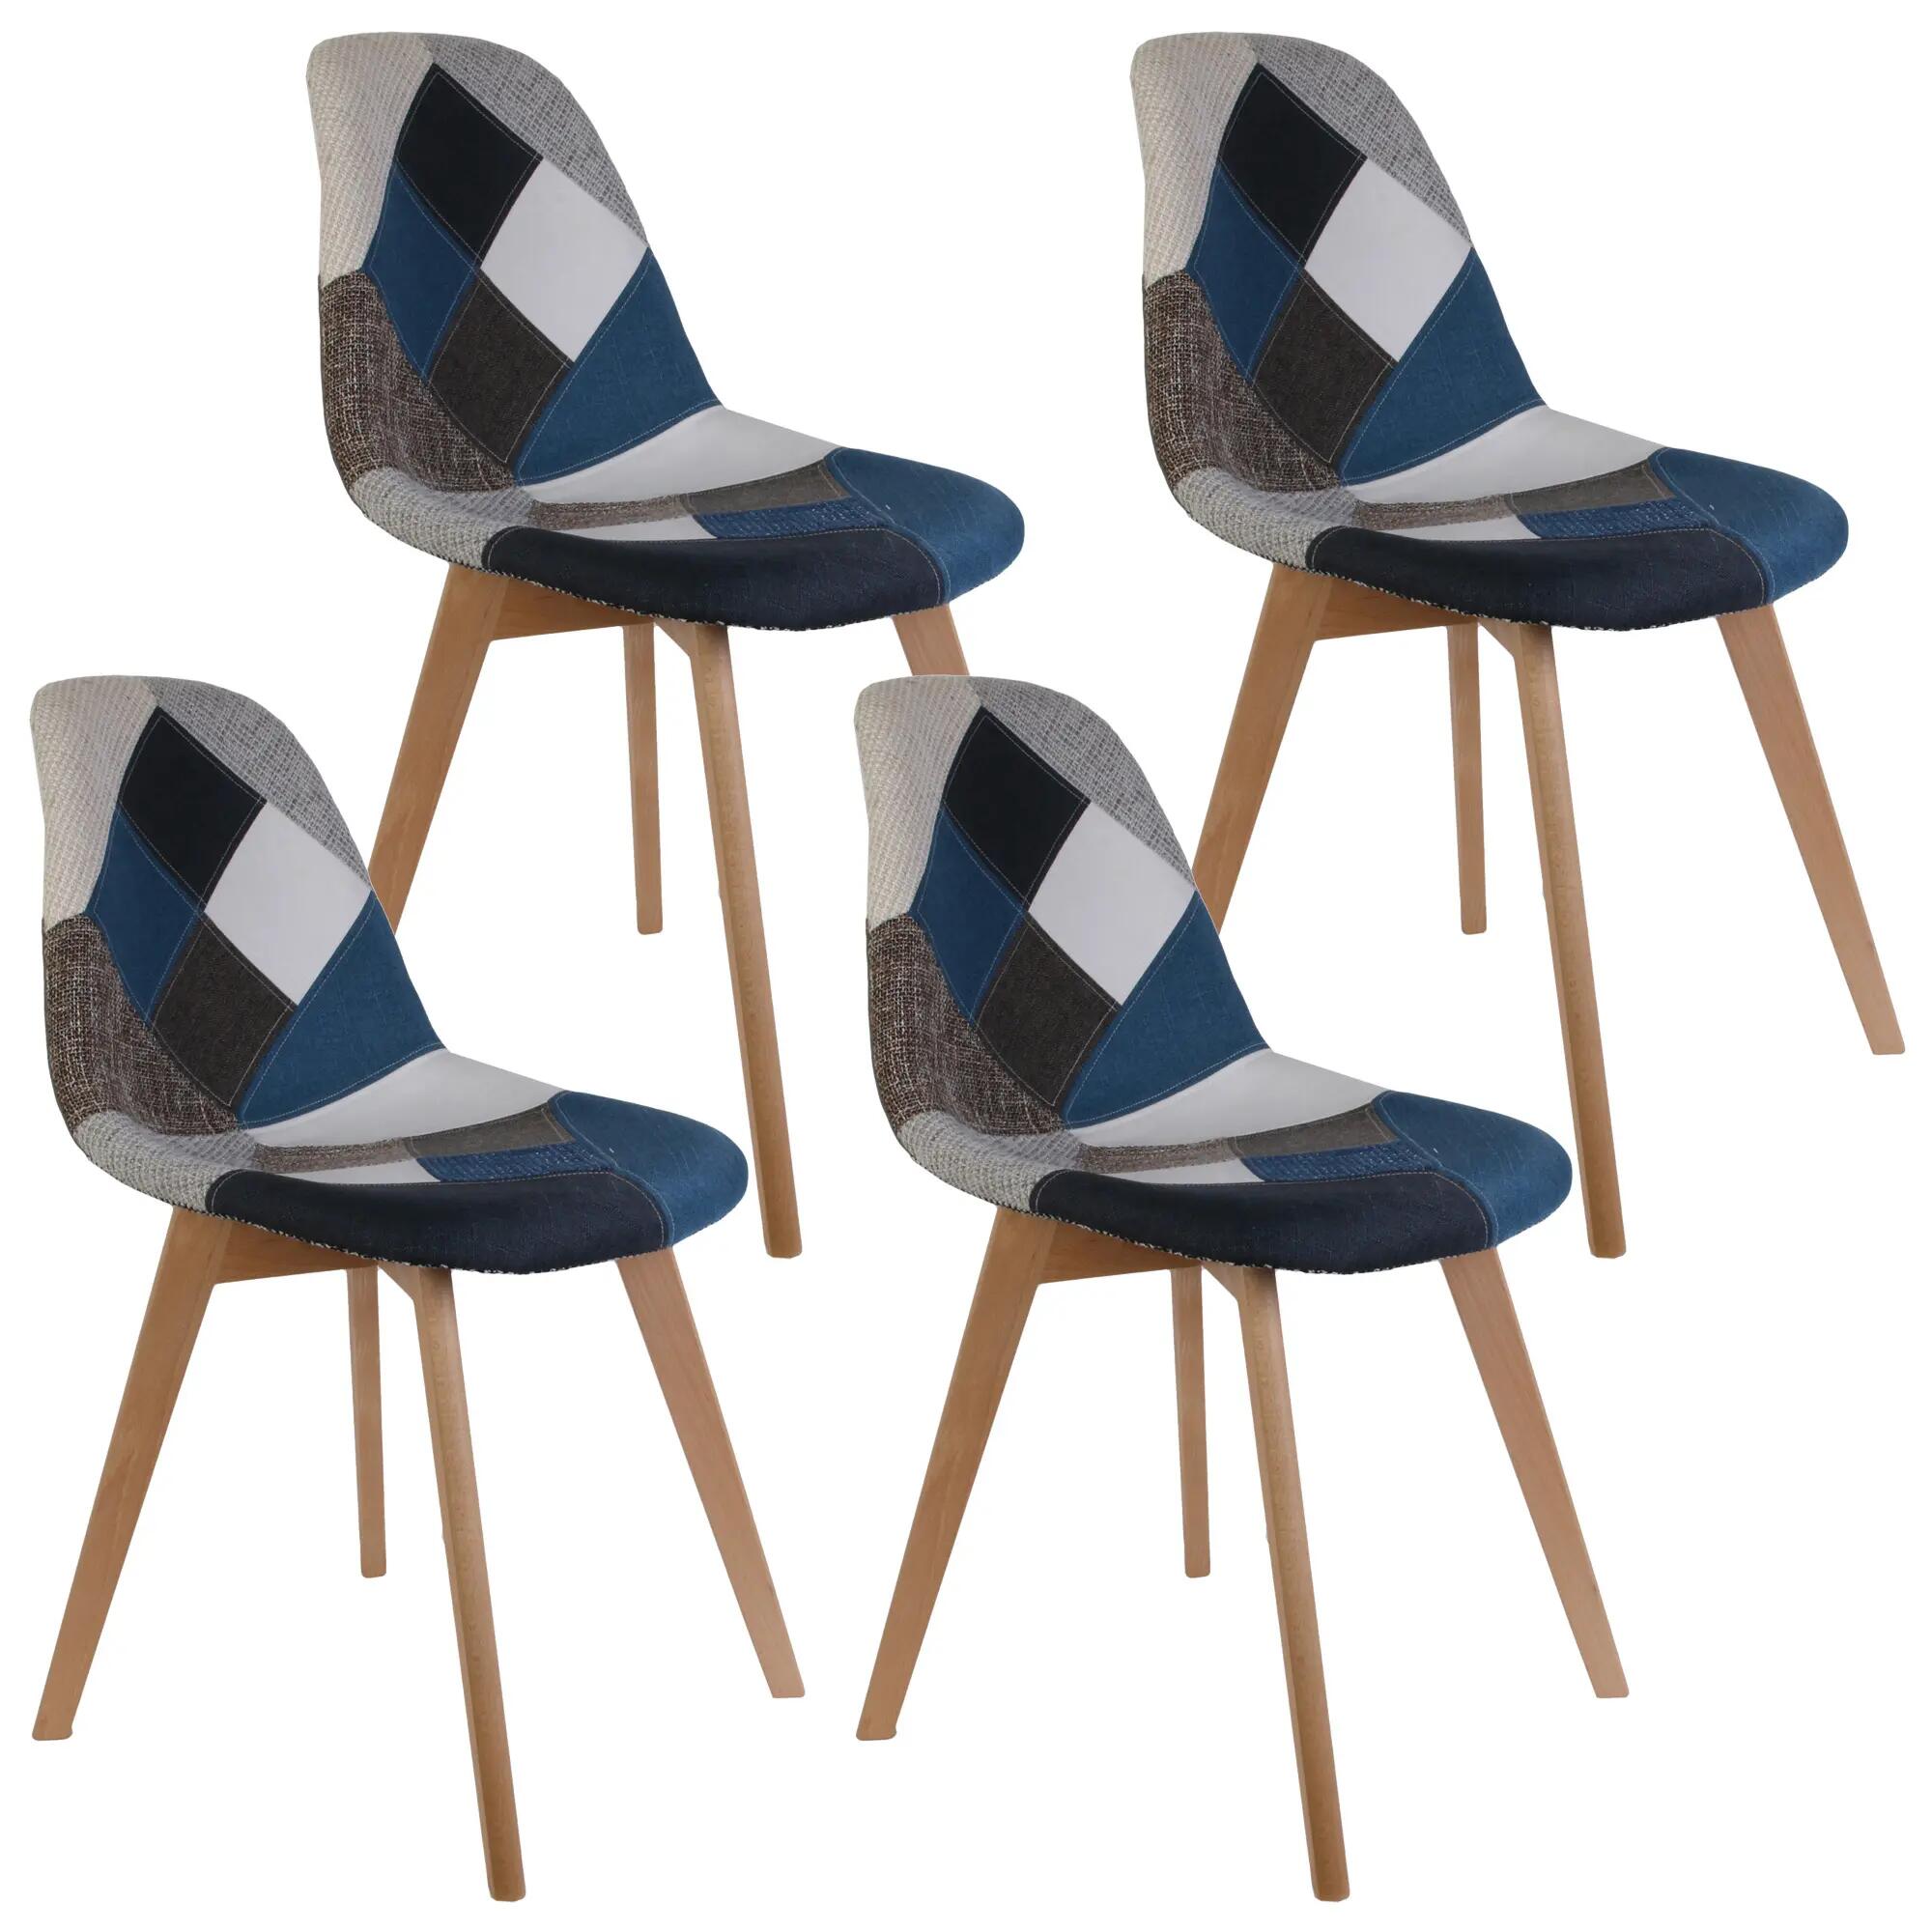 Set de 4 sillas patchwork de madera en color multicolor azul cmp 85x41x55,5cm